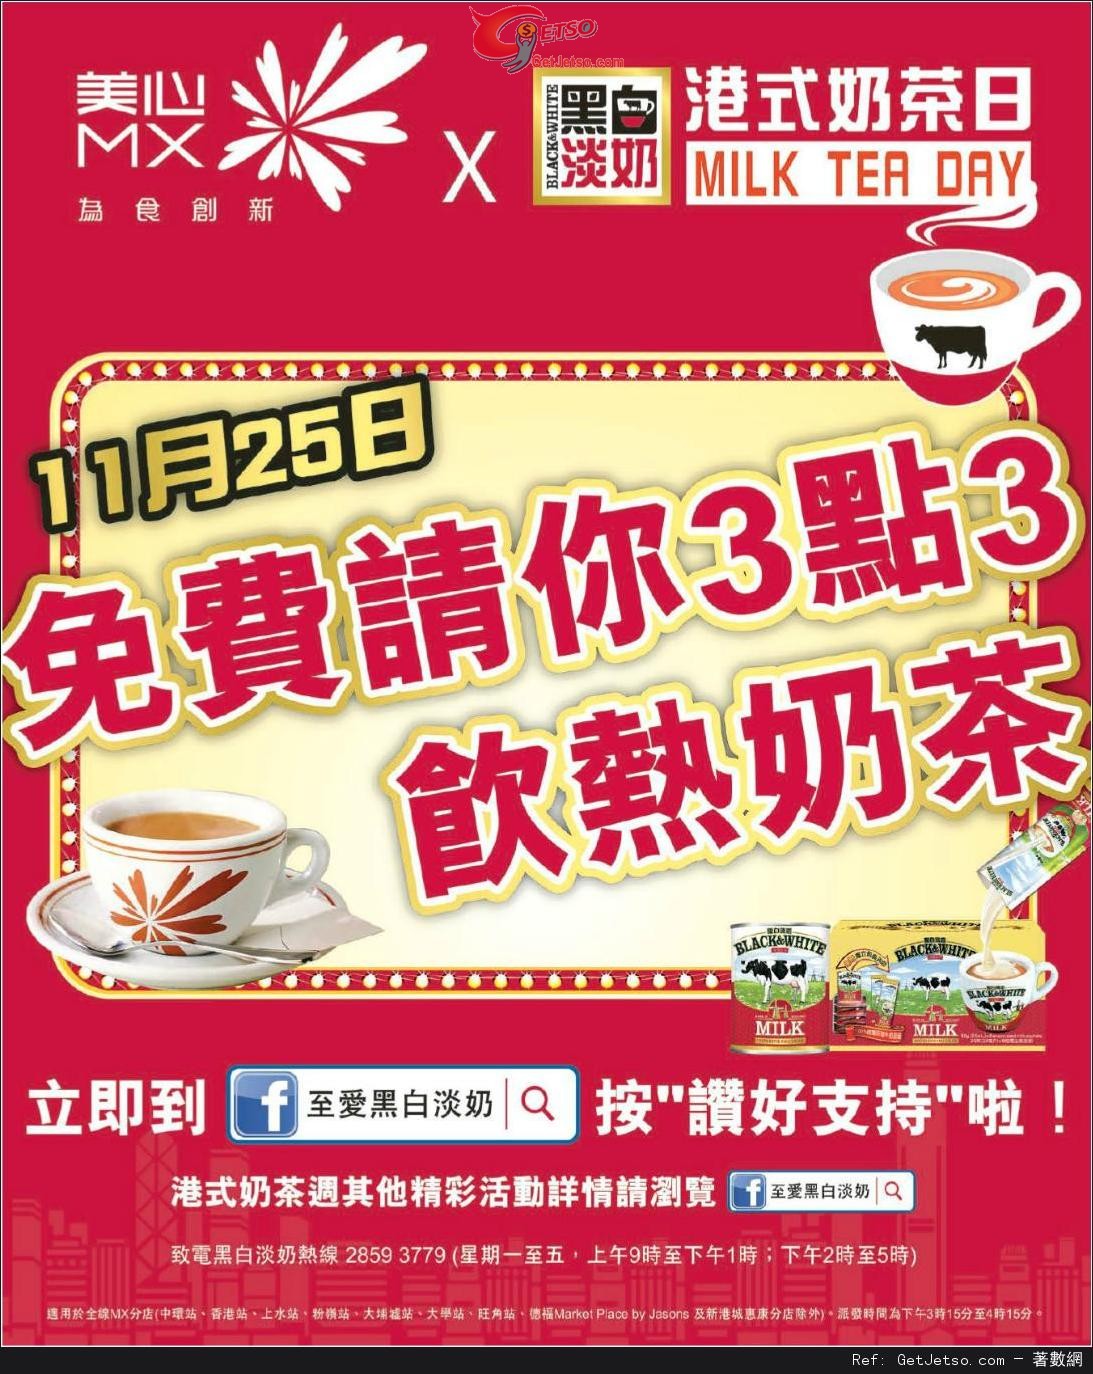 美心MX免費送熱奶茶優惠(13年11月25日)圖片1